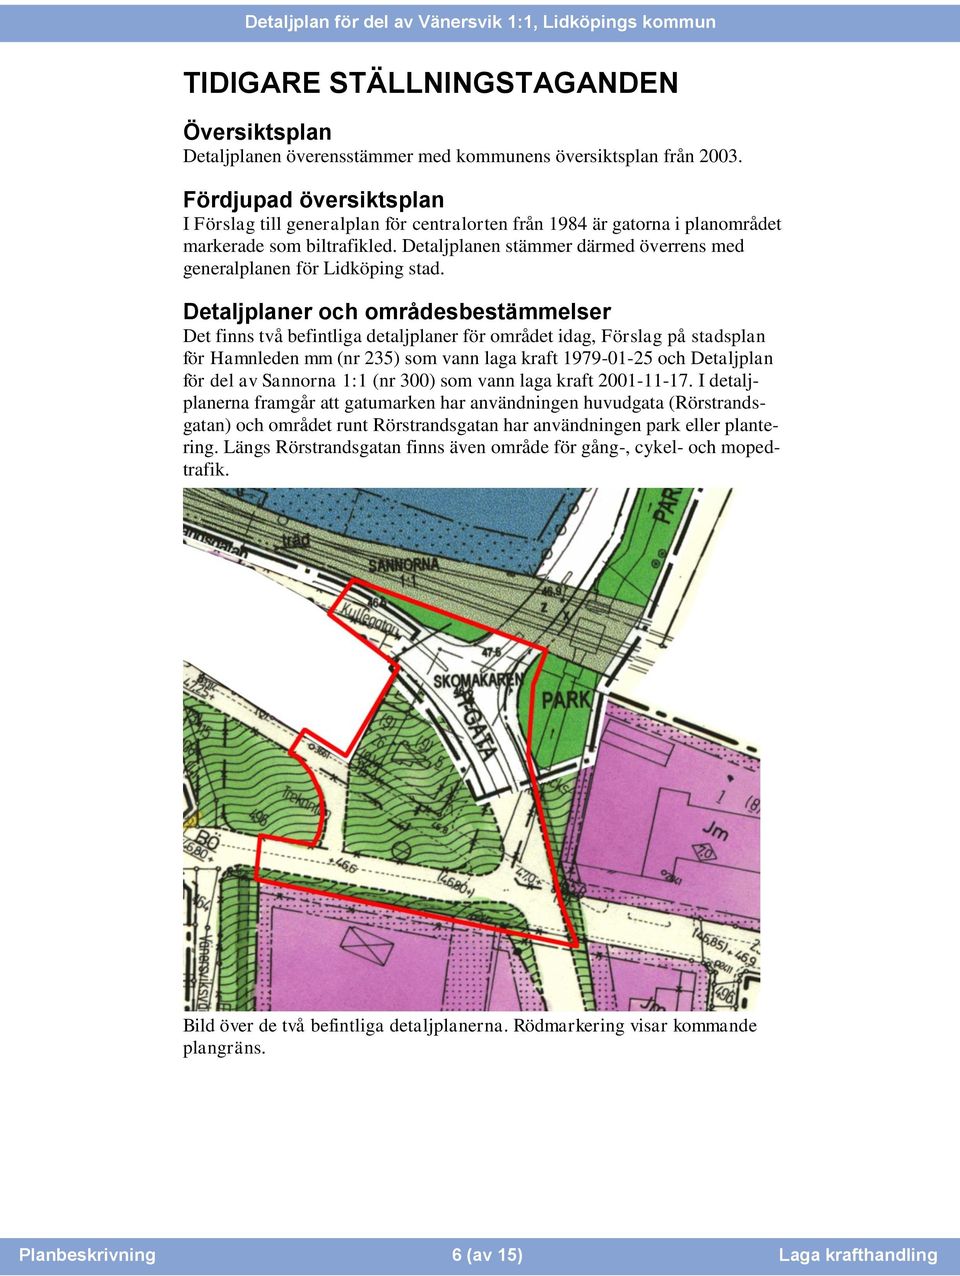 Detaljplanen stämmer därmed överrens med generalplanen för Lidköping stad.